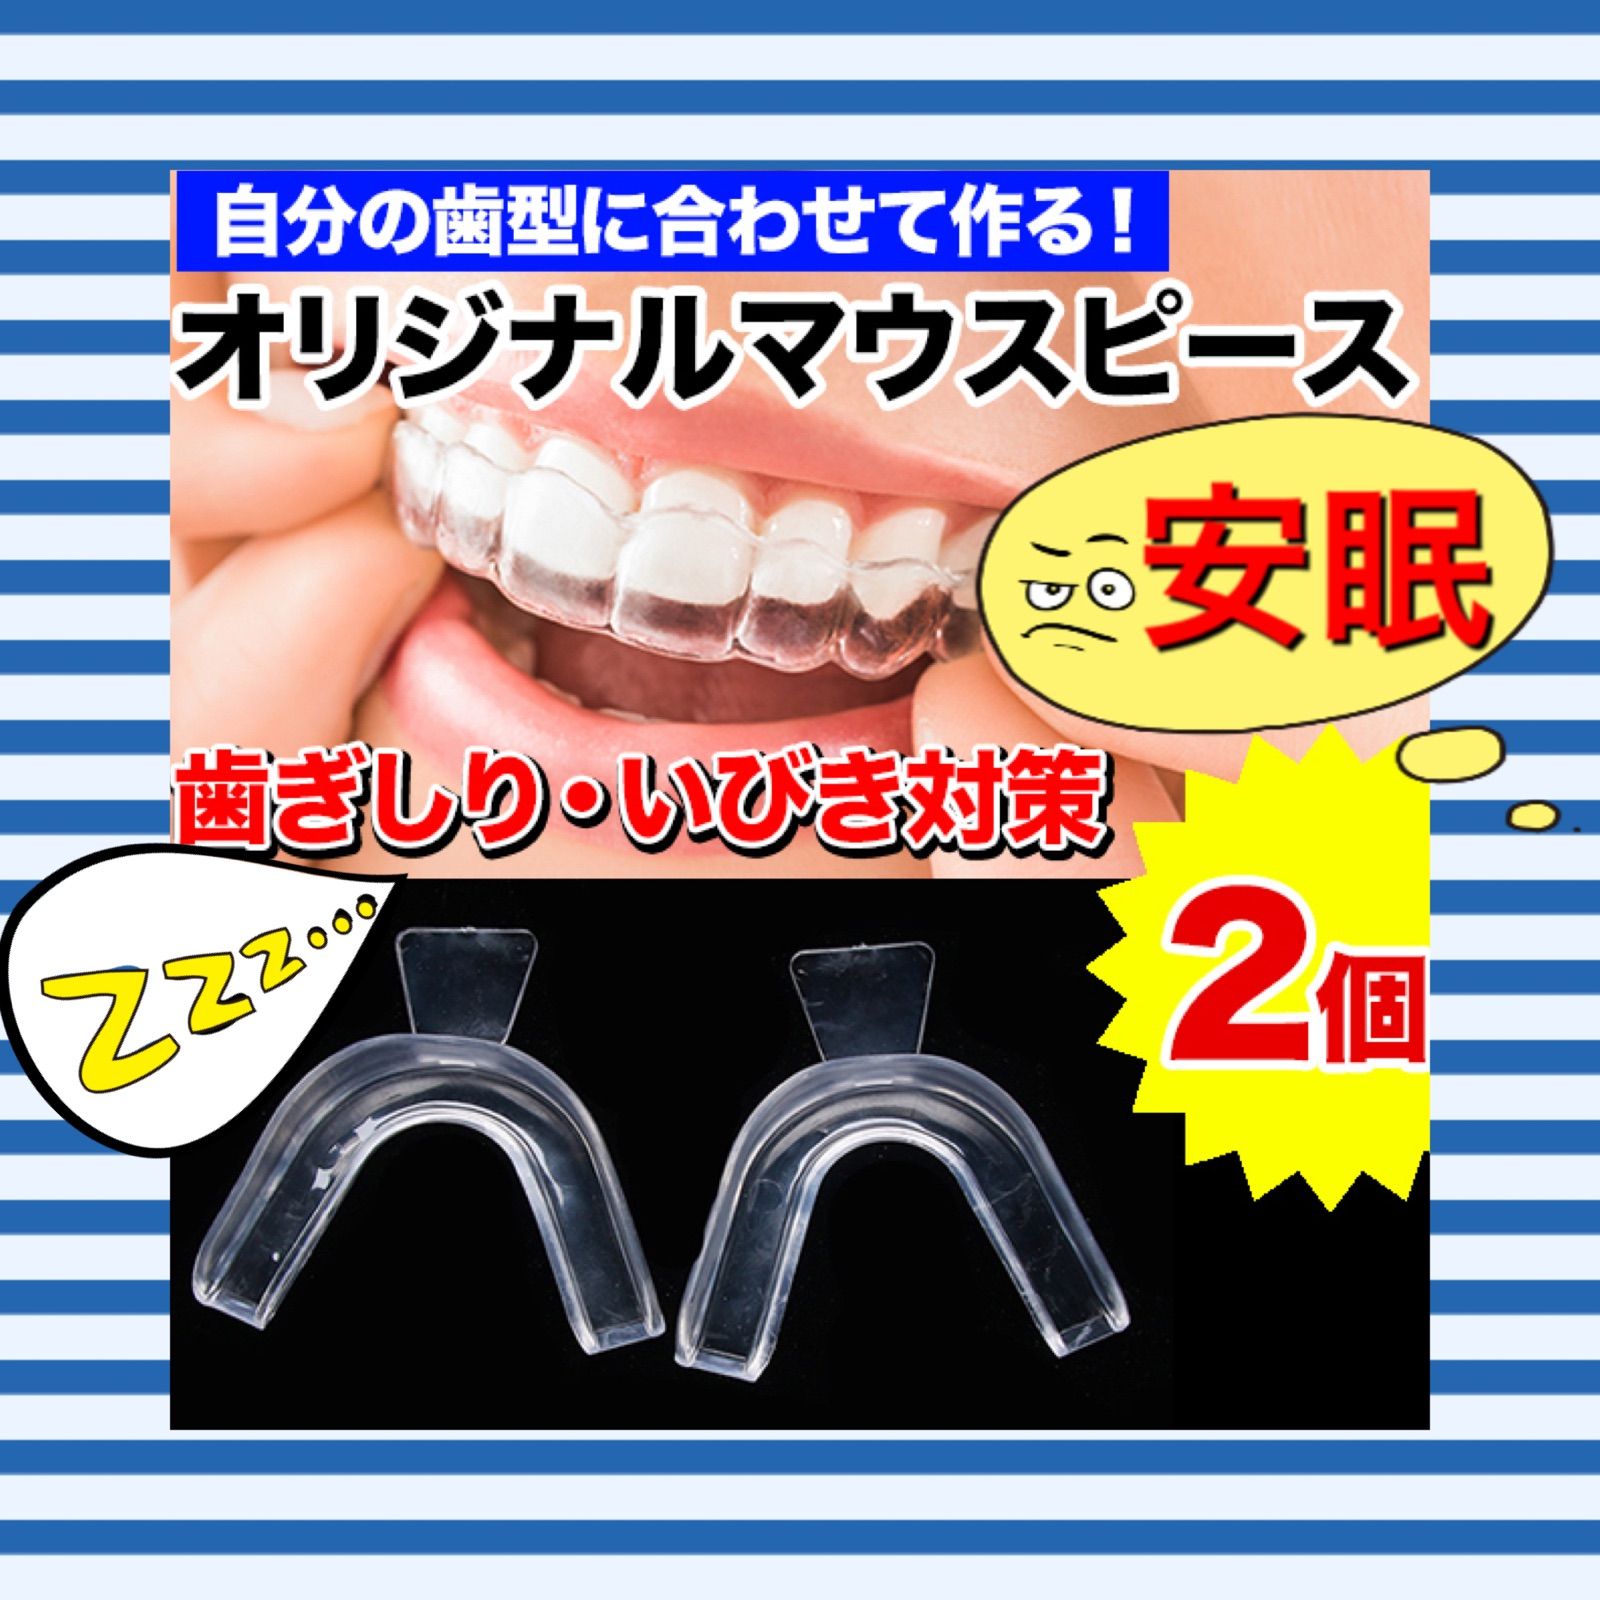 自分の歯型で作るオリジナルマウスピース 歯ぎしり いびき